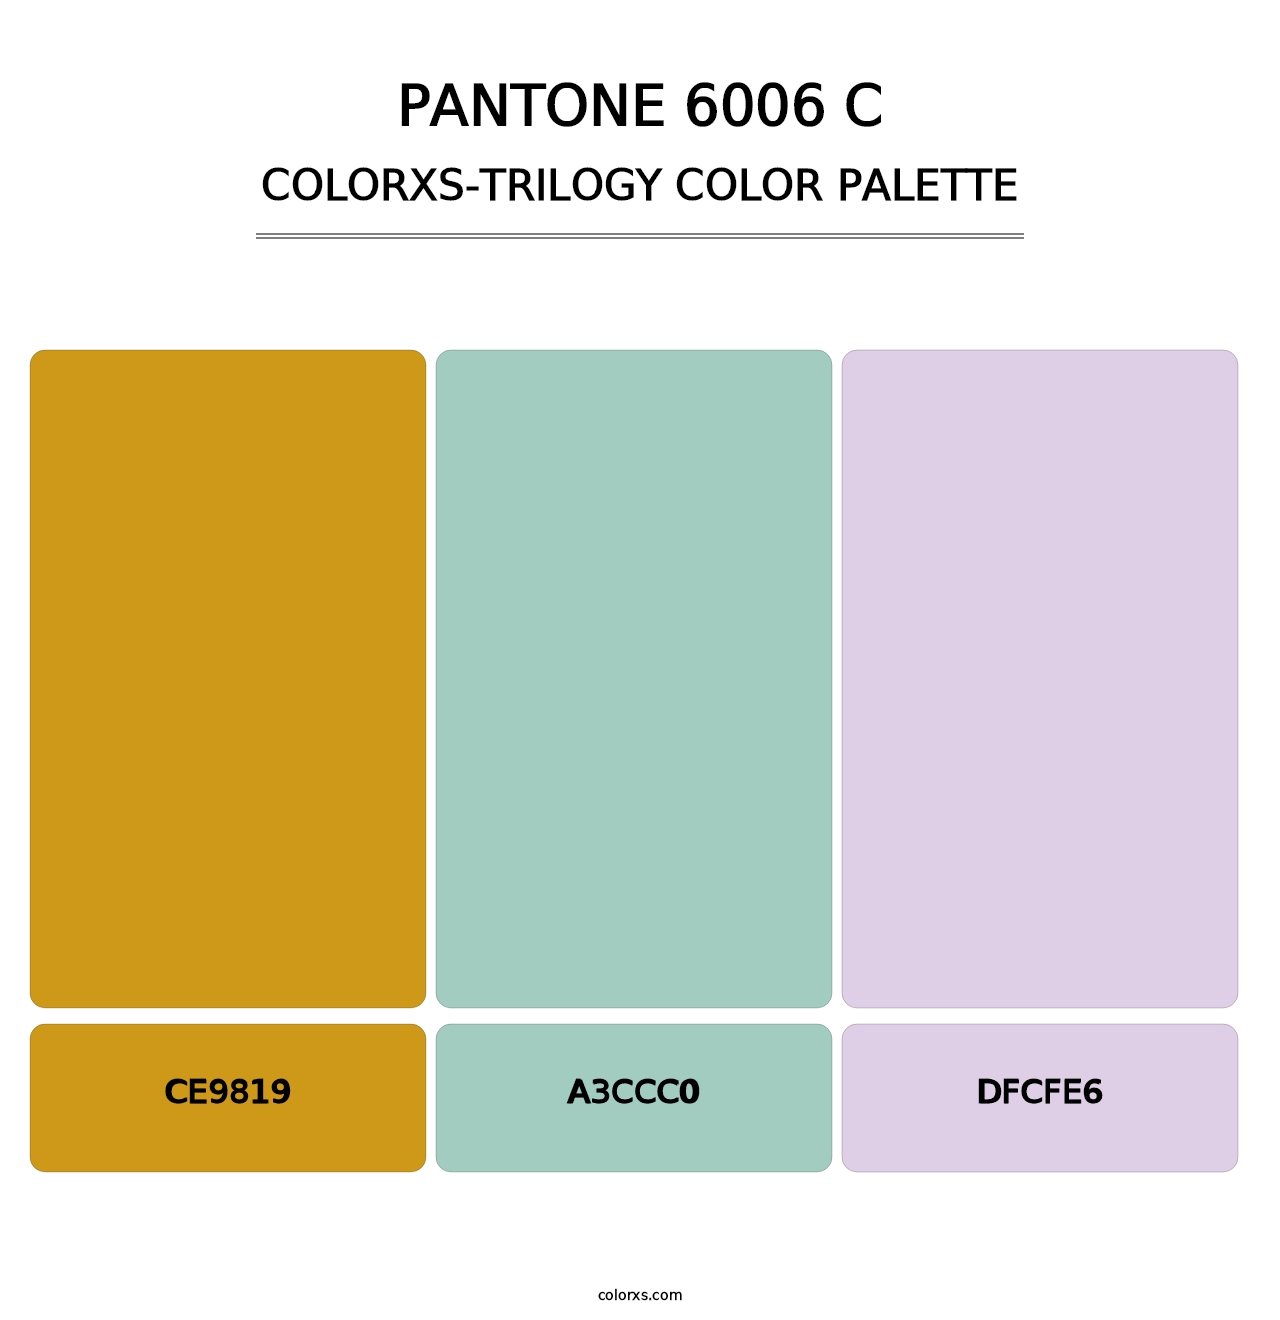 PANTONE 6006 C - Colorxs Trilogy Palette